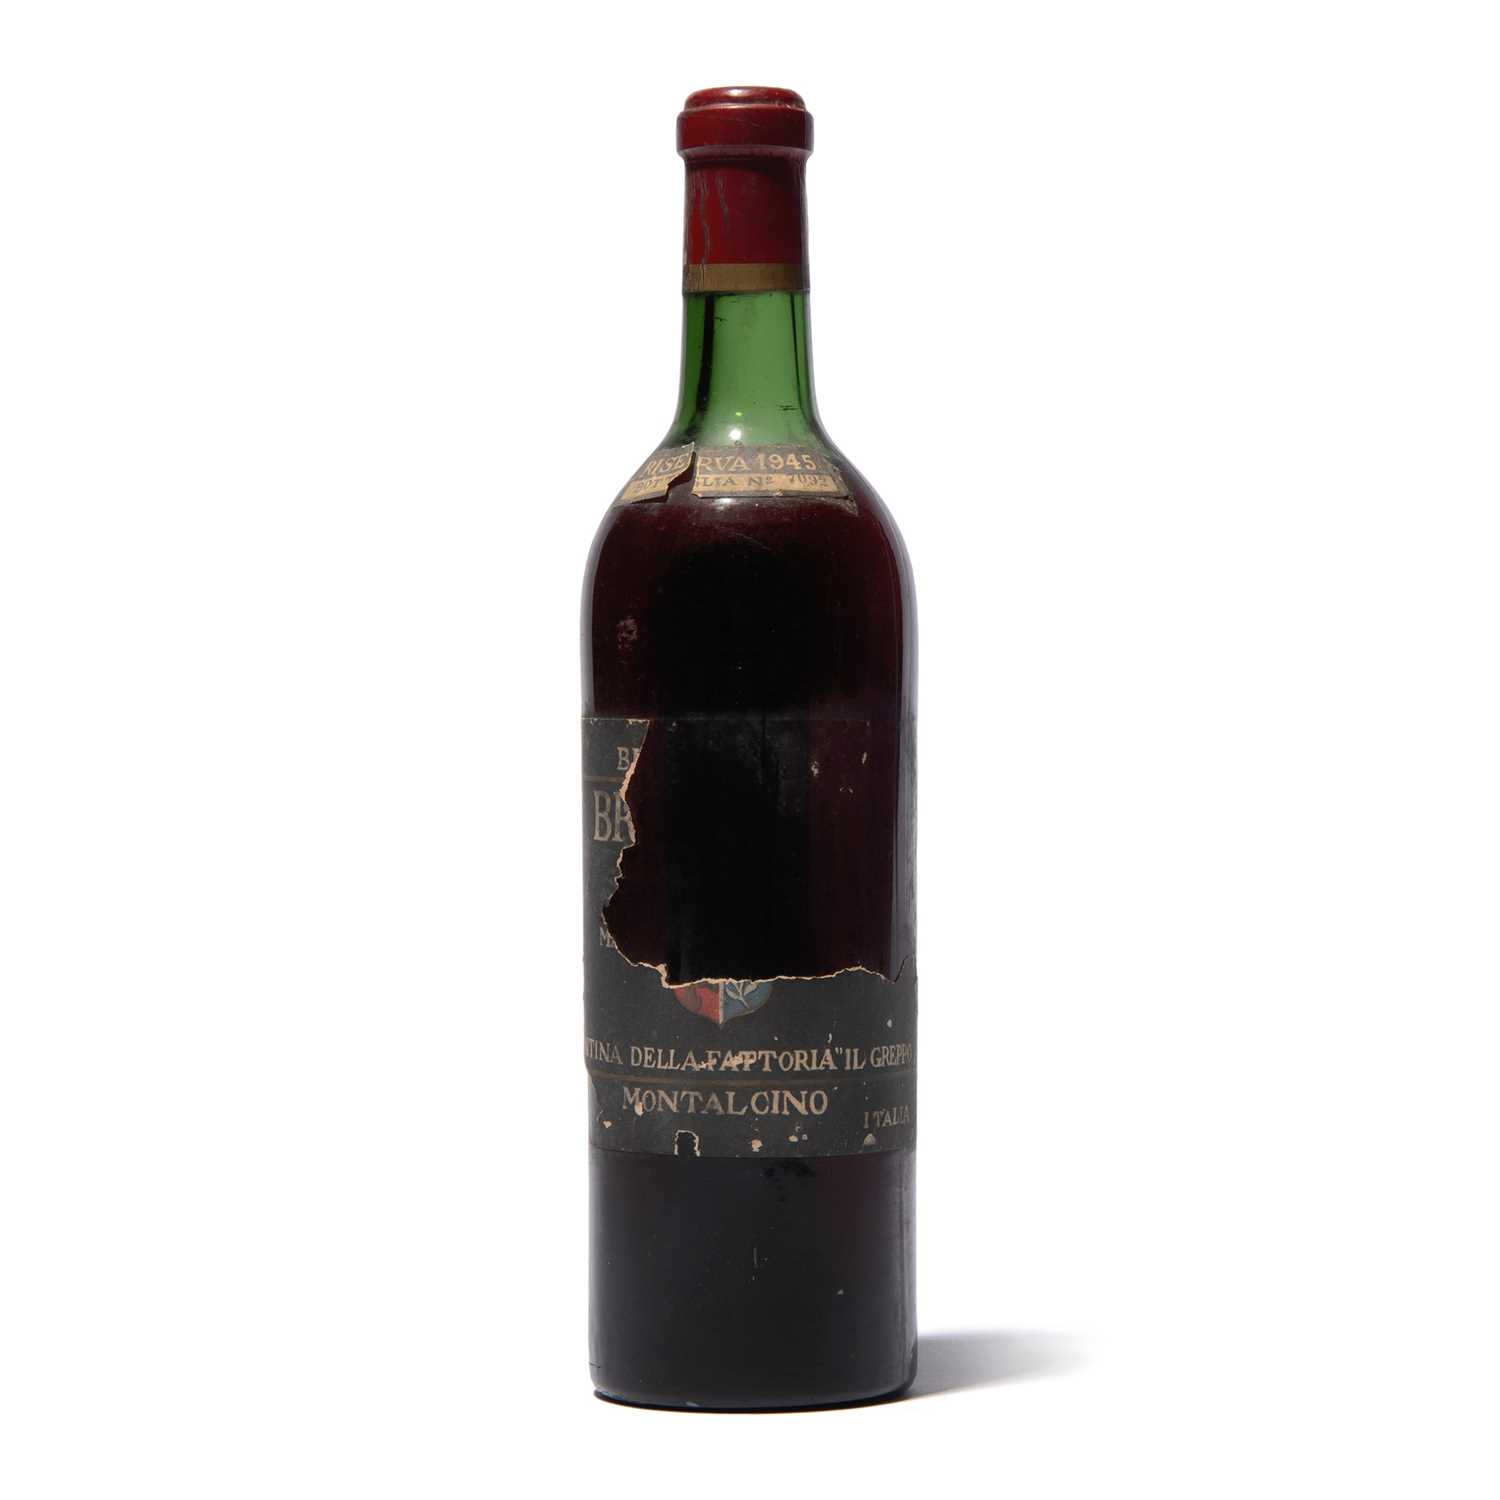 Lot 154 - 1 bottle 1945 Brunello di Montalcino Riserva Biondi-Santi